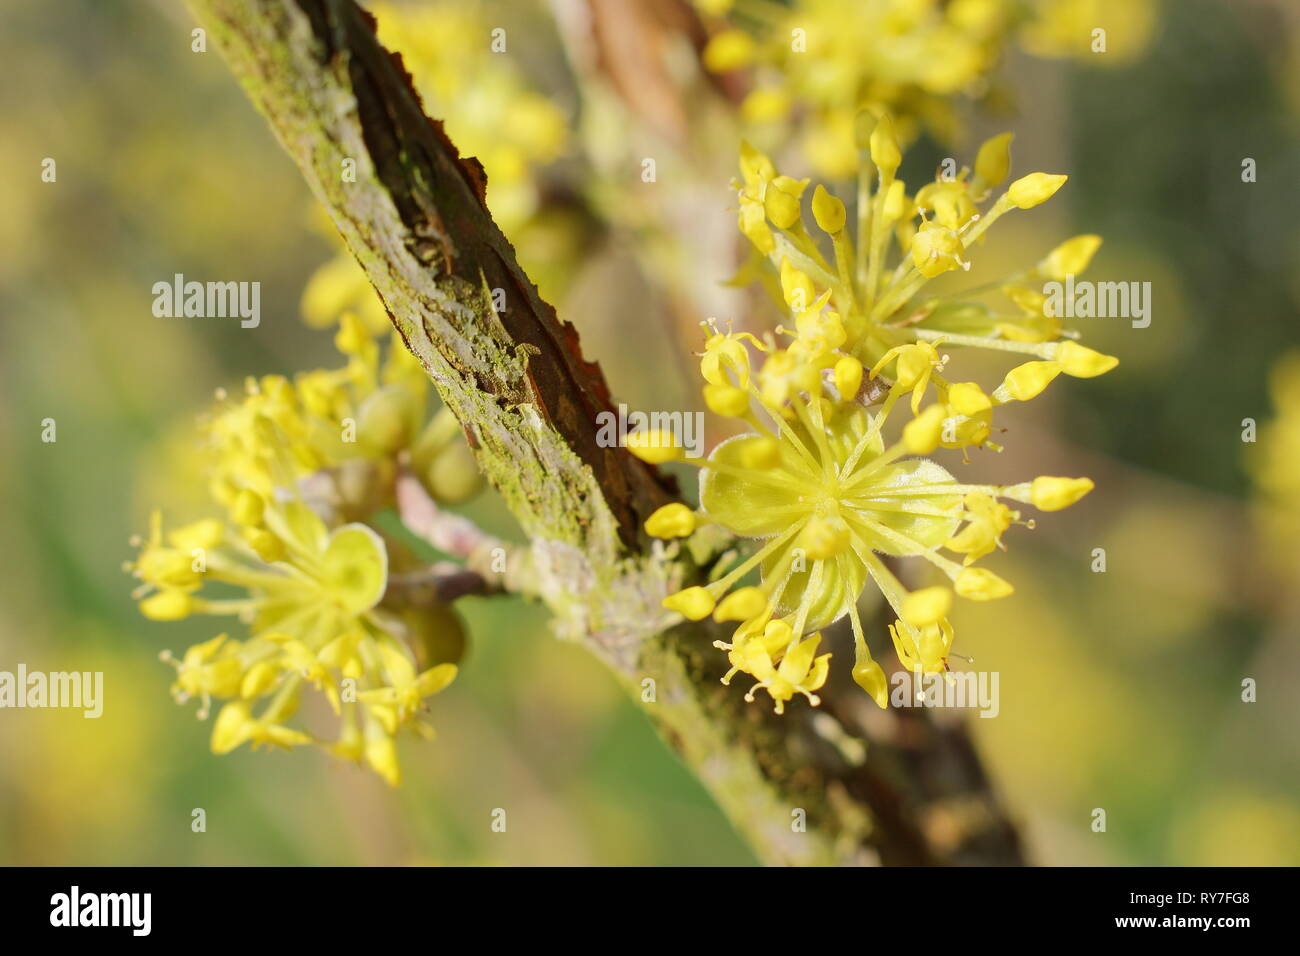 Cornus mas. Les grappes de fleurs denses de la cerise en cornaline à la fin de l'hiver soleil - Février, UK garden Banque D'Images